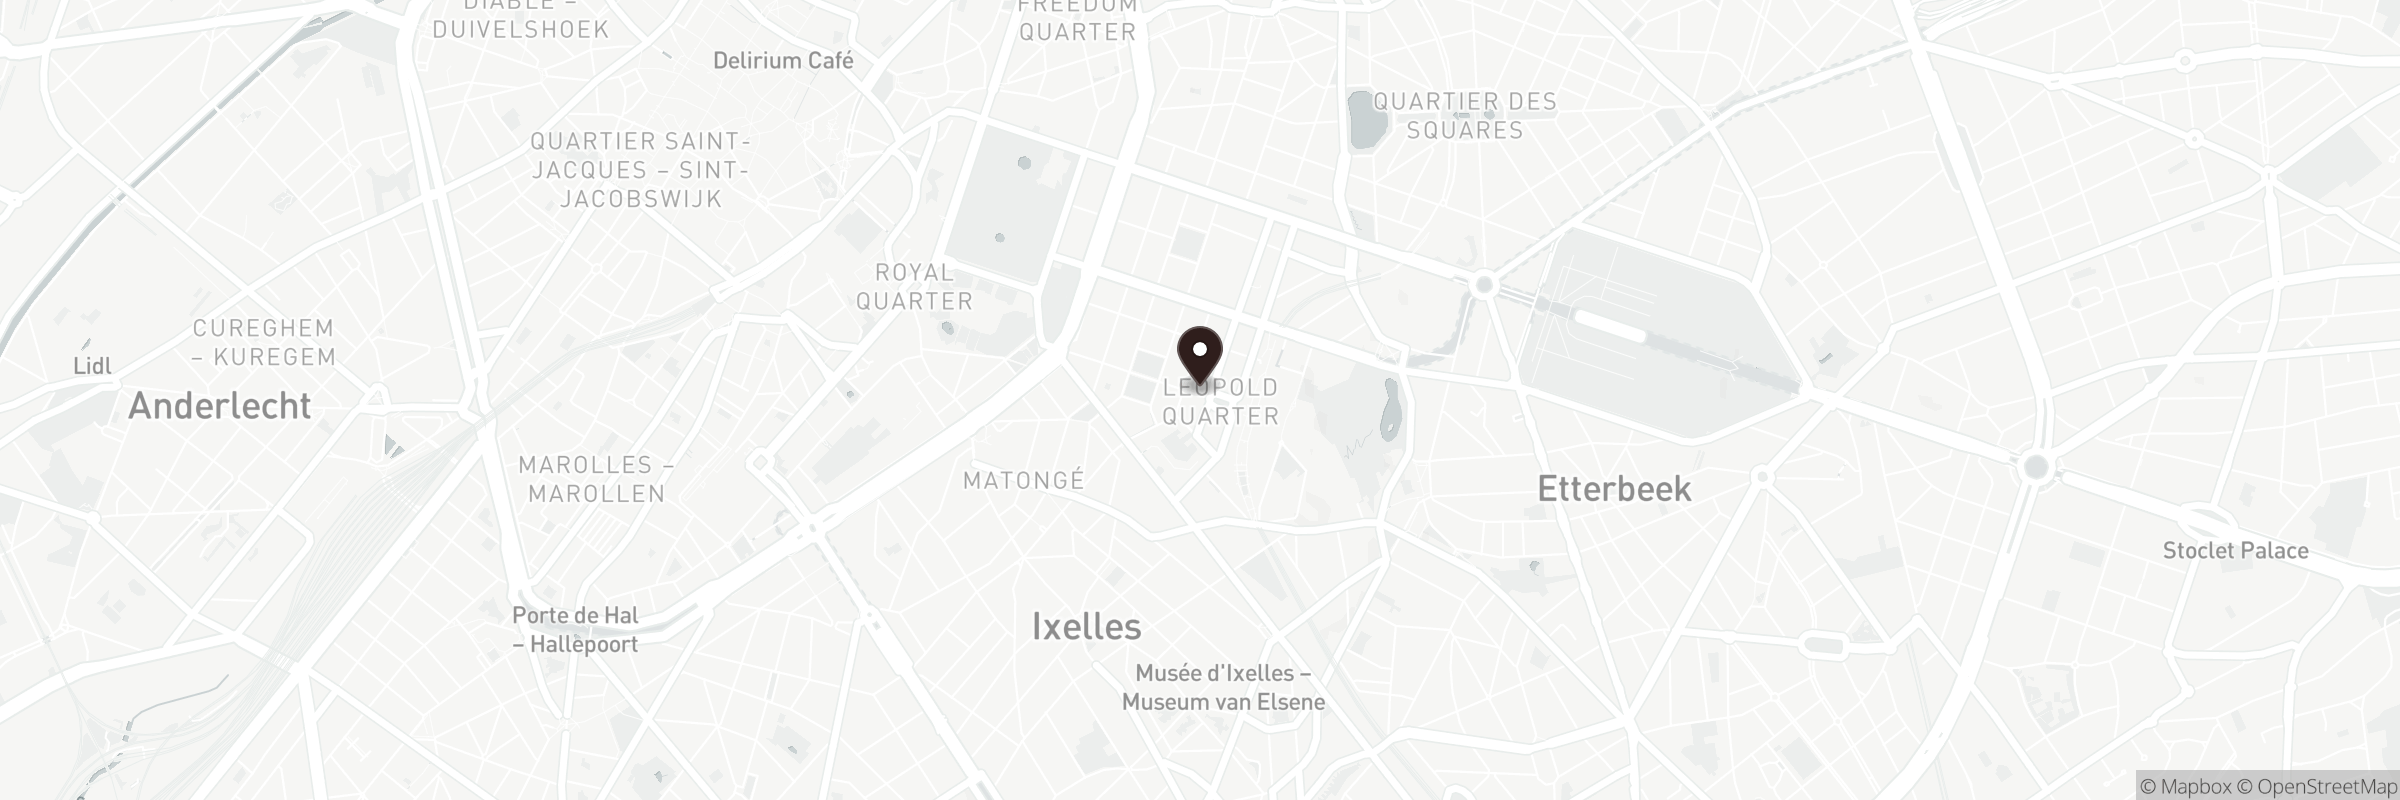 Carte indiquant l'adresse de Place du Luxembourg